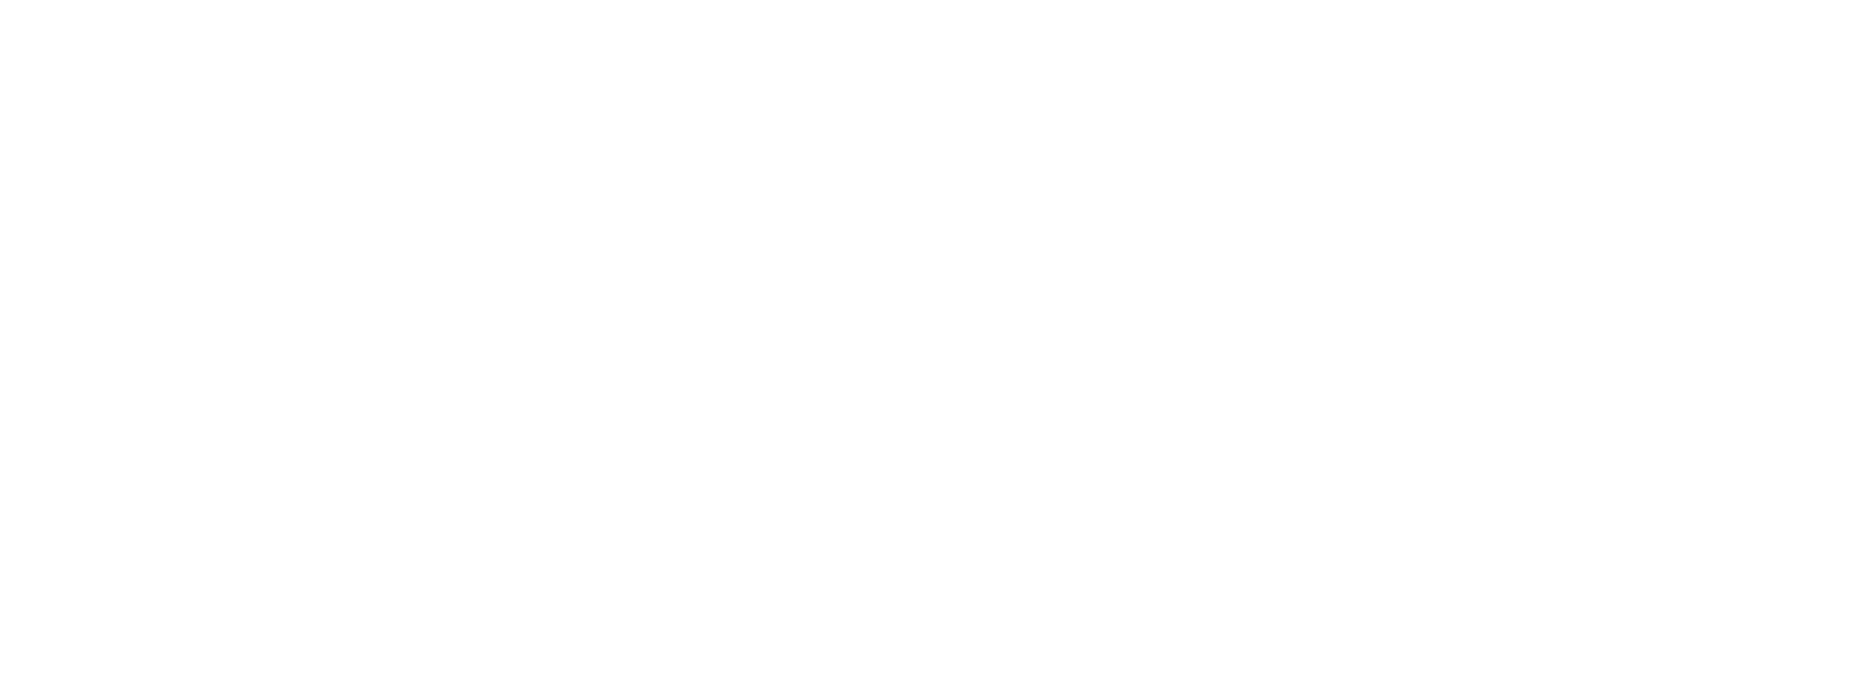 Keller Williams Luxury Symposium